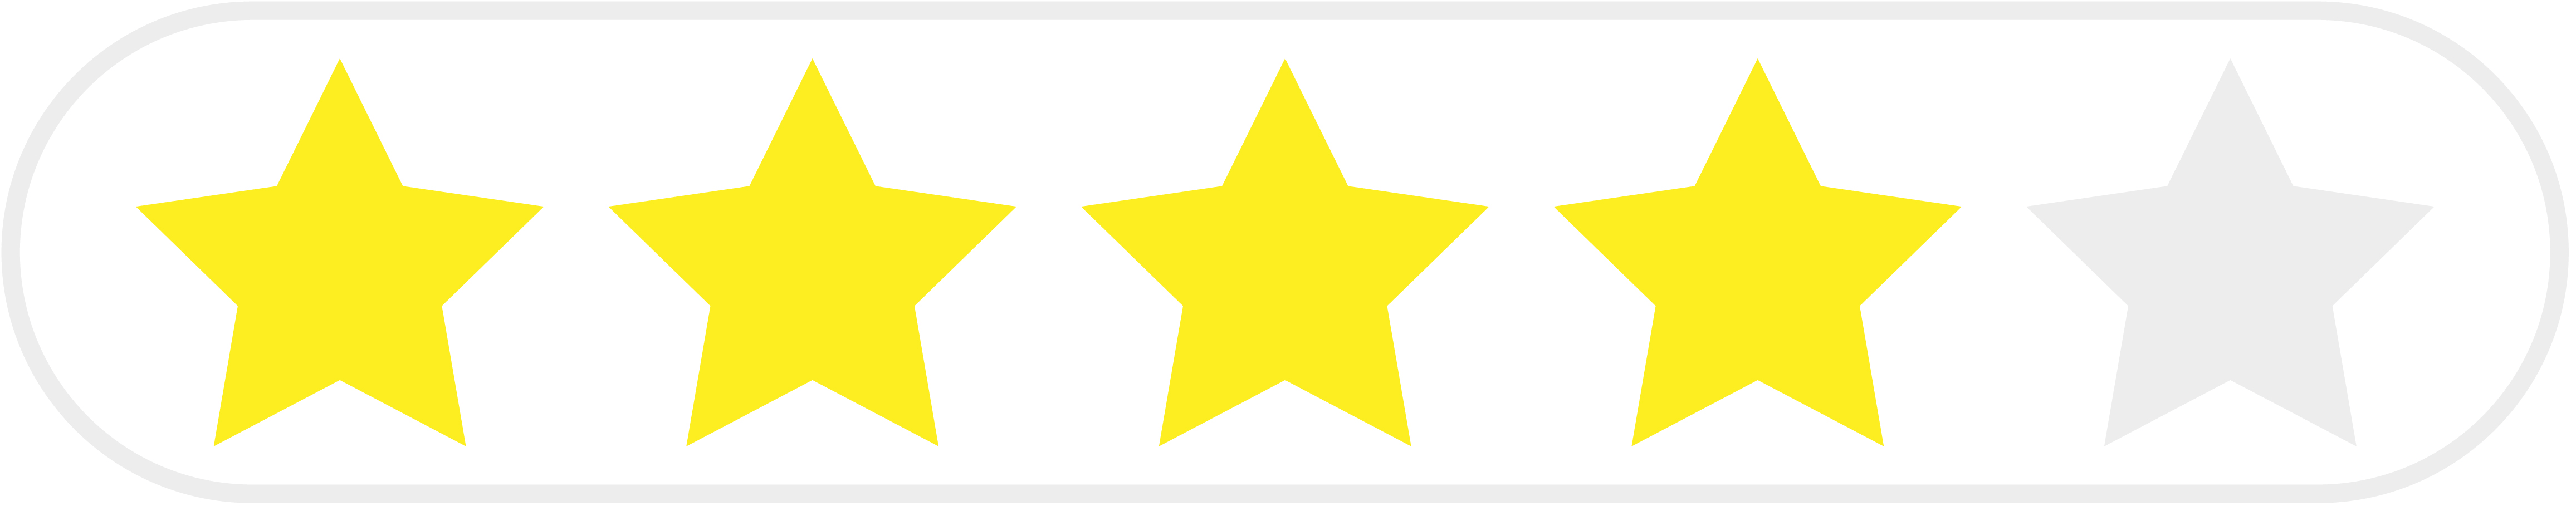 оценка 4 звезды